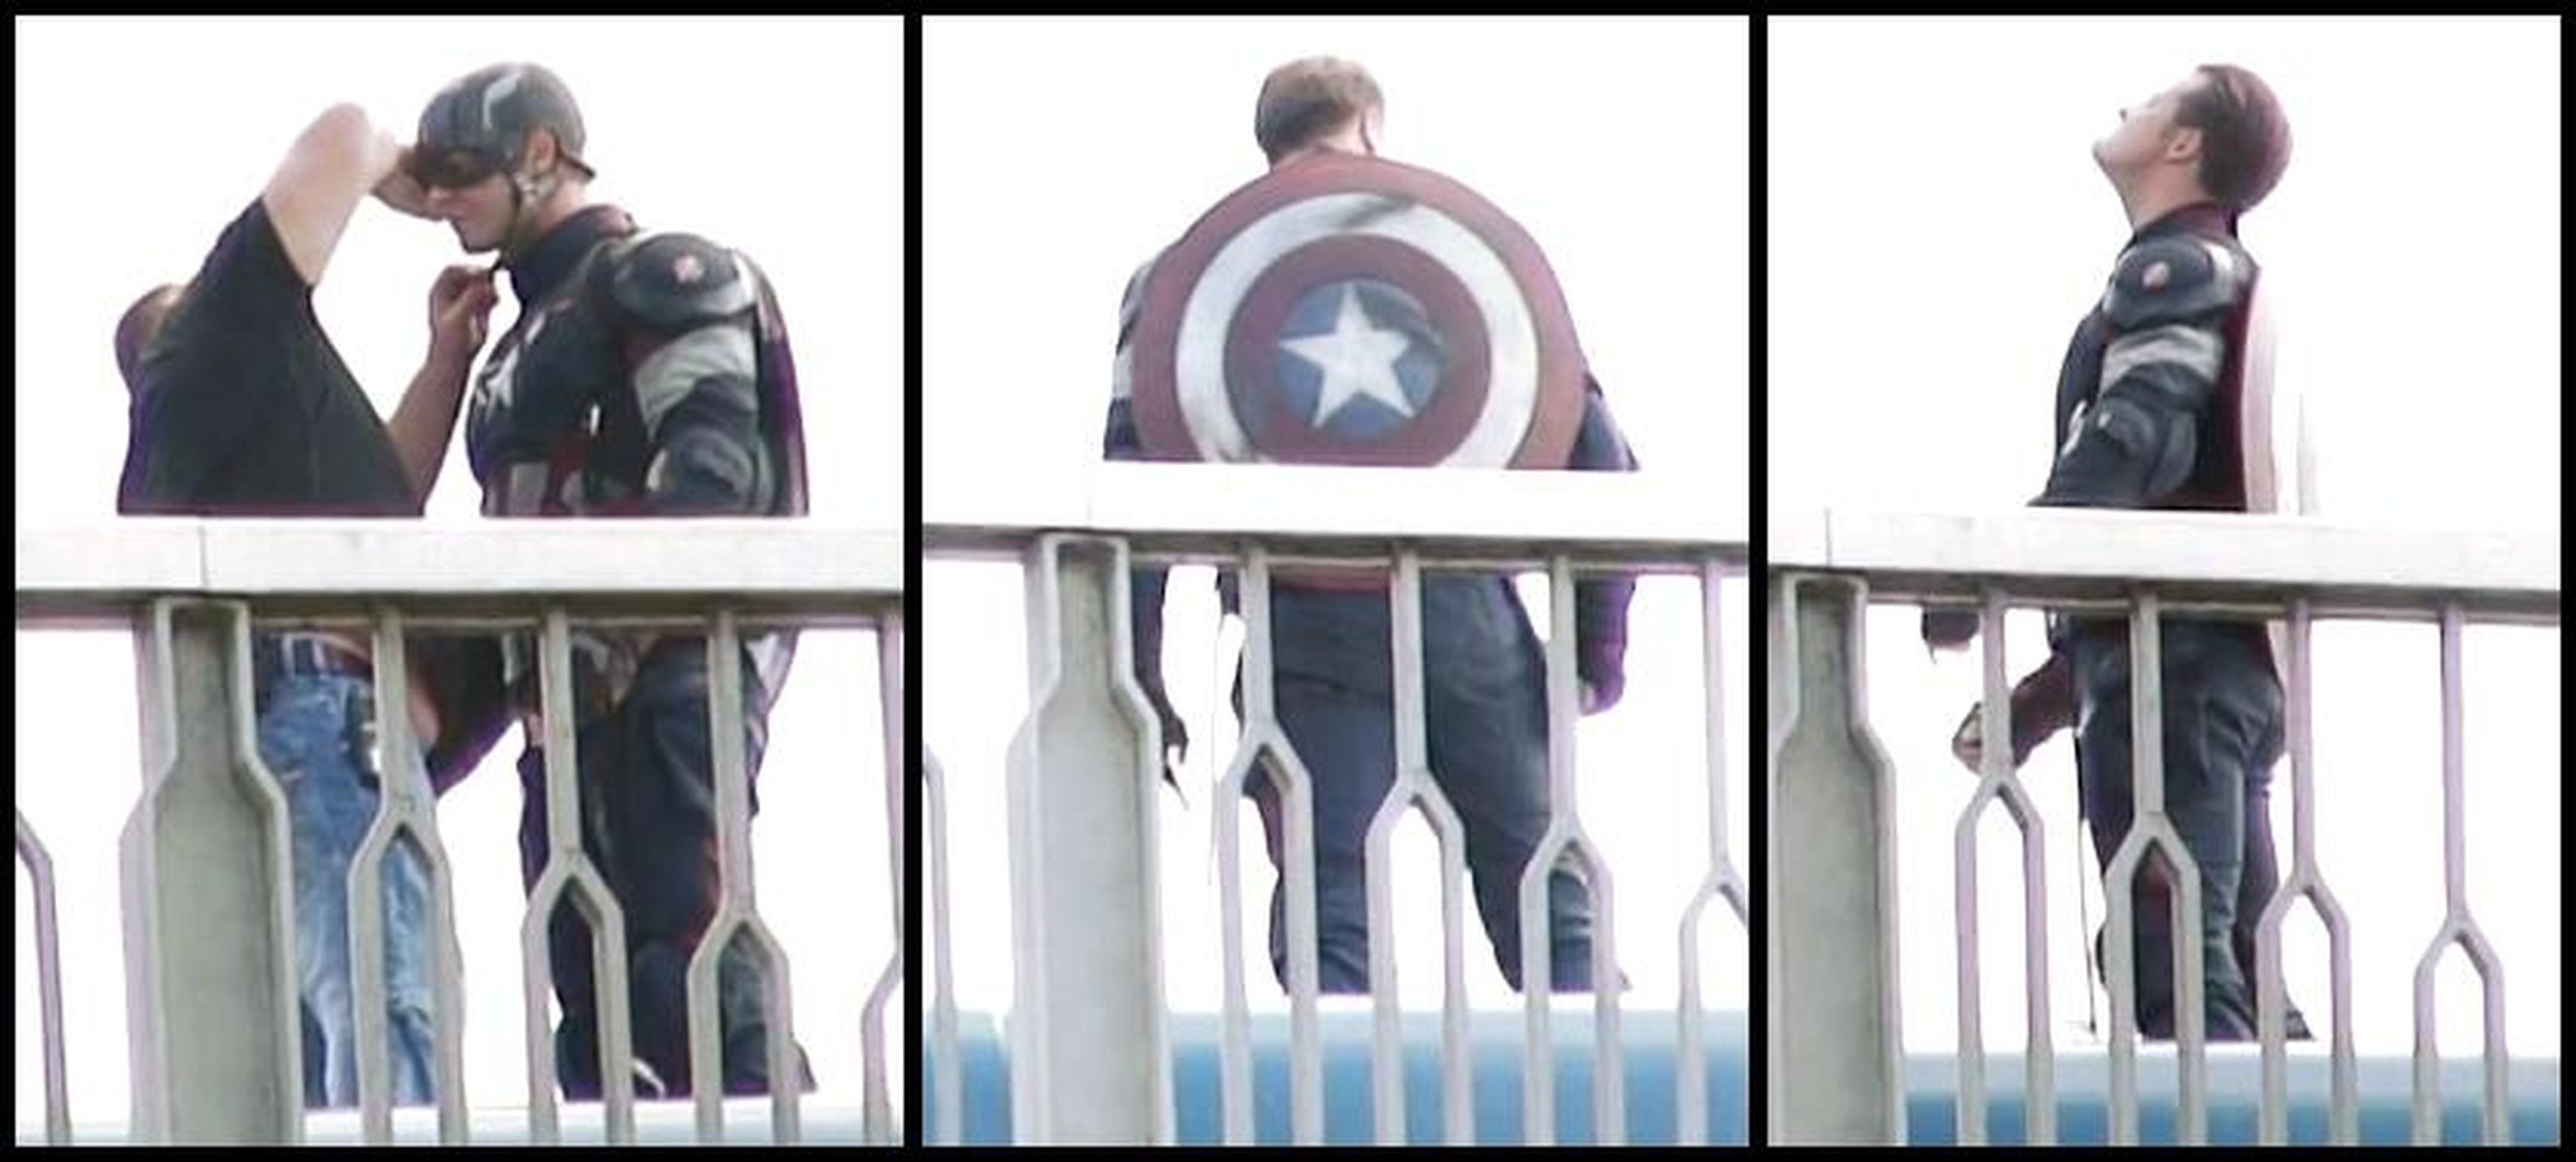 Primeras imágenes de El Capitán América en Vengadores 2